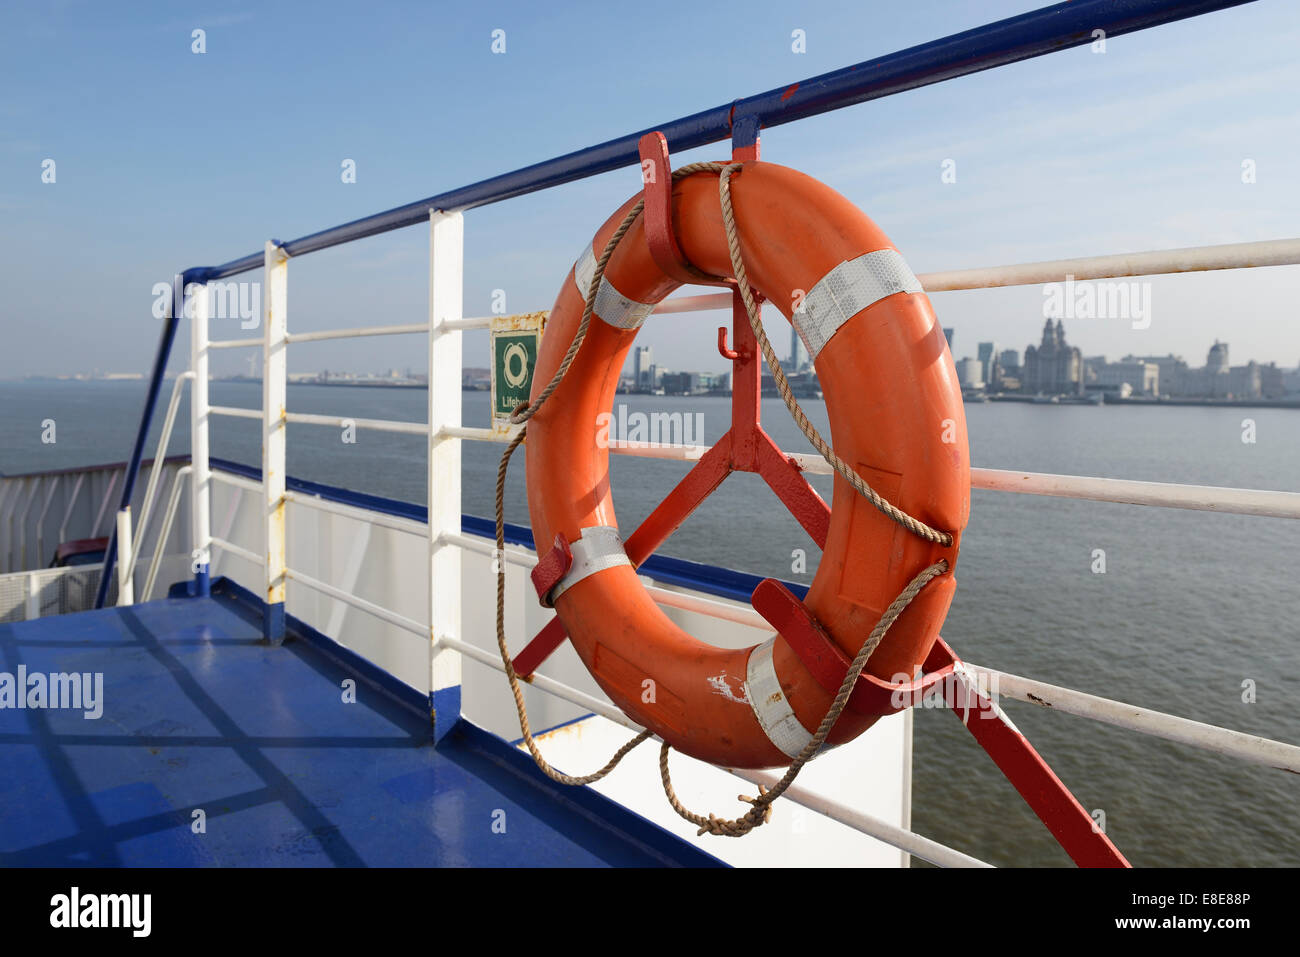 La vie d'un joint torique sur le pont d'un ferry Stena Line Mer d'Irlande sur la Mersey Banque D'Images